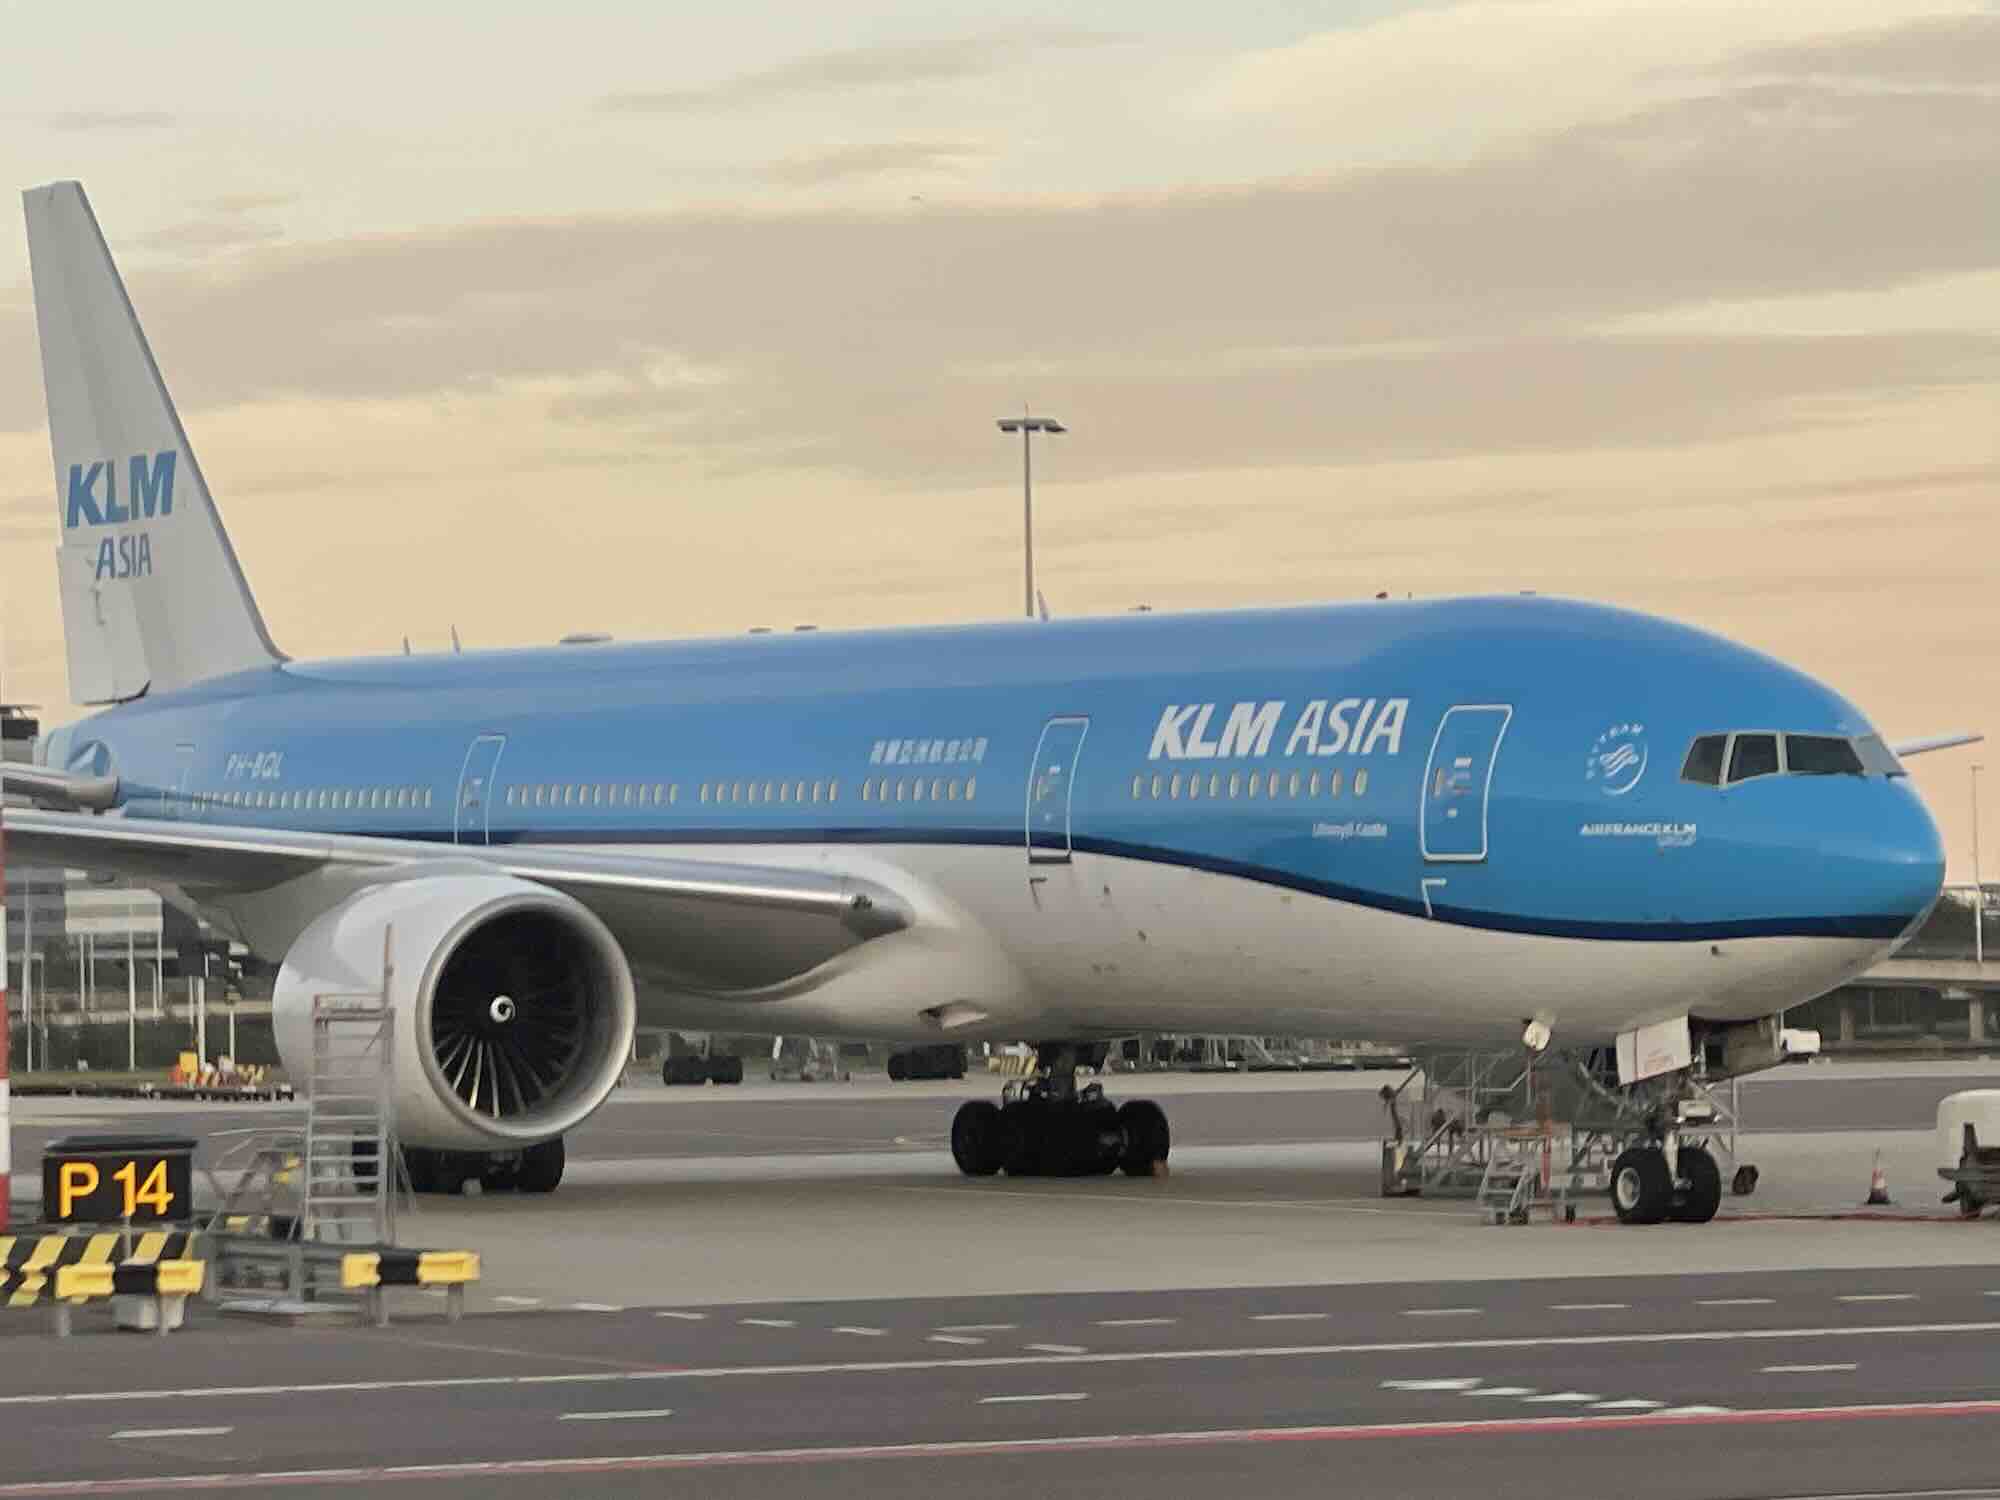 L’avvistamento sulle piste di Amsterdam: un Boeing 777 di KLM Asia. Che compagnia è e dove vola